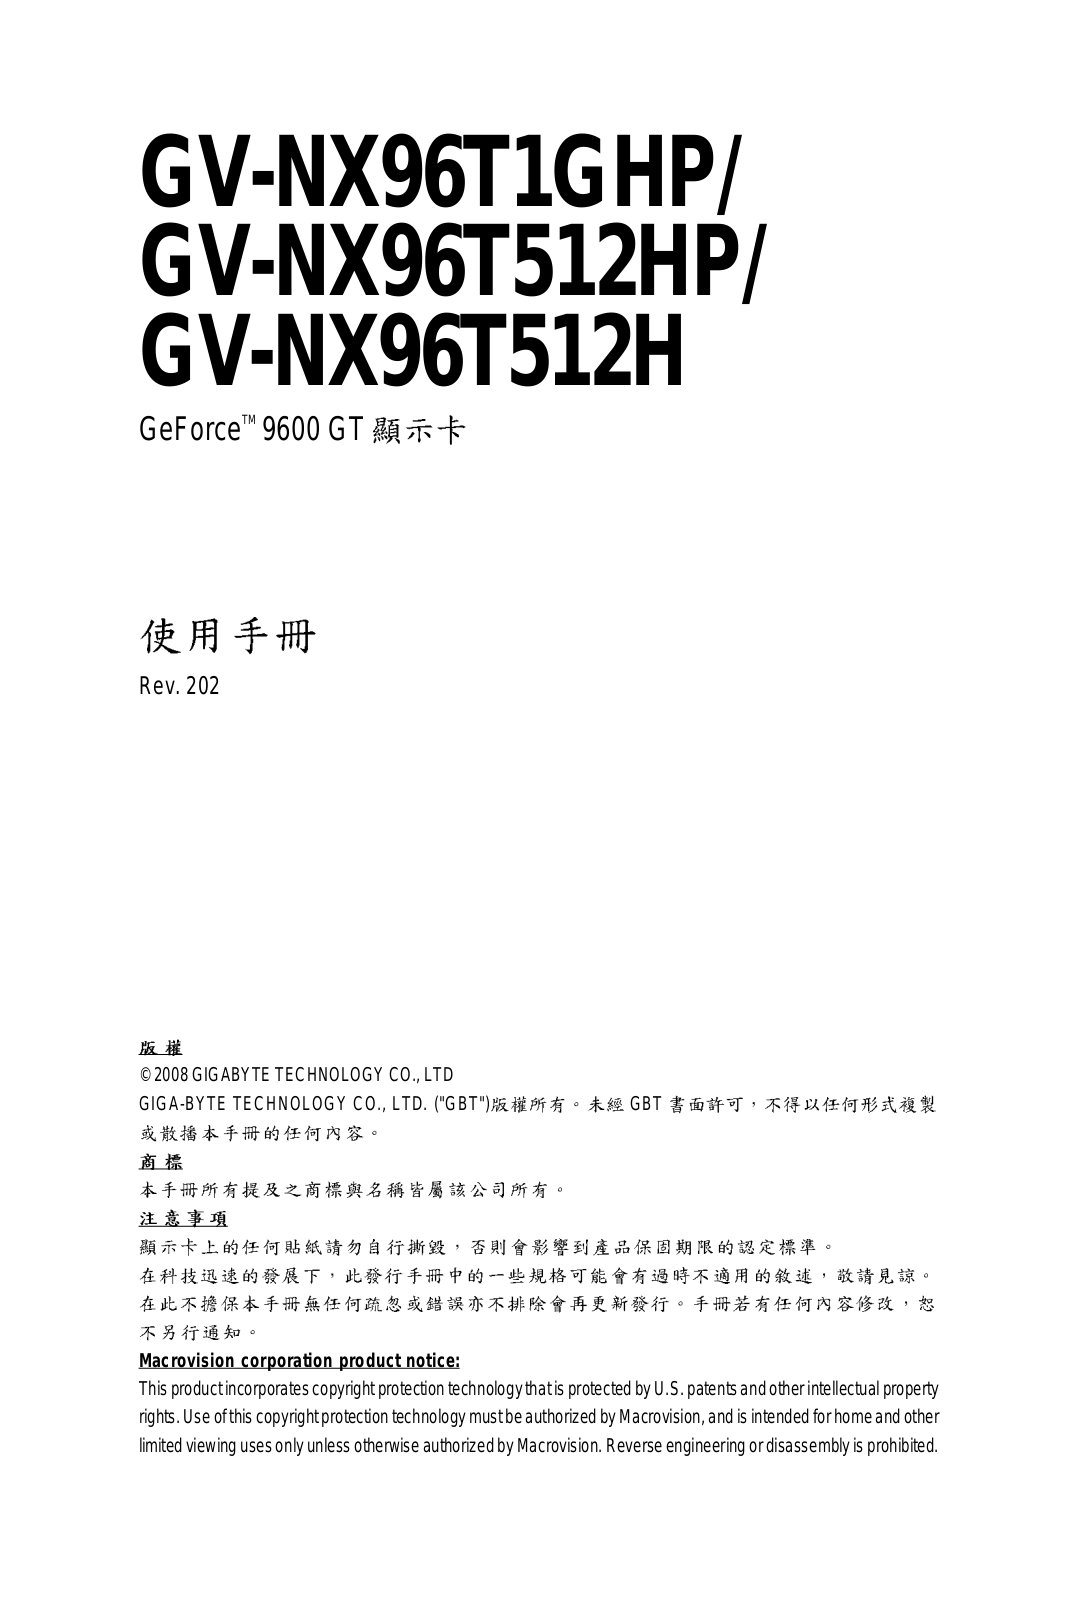 Gigabyte GV-NX96T512H-HM, GV-NX96T512HP-HM, GV-NX96T512HP, GV-NX96T1GHP, GV-NX96T512H Manual